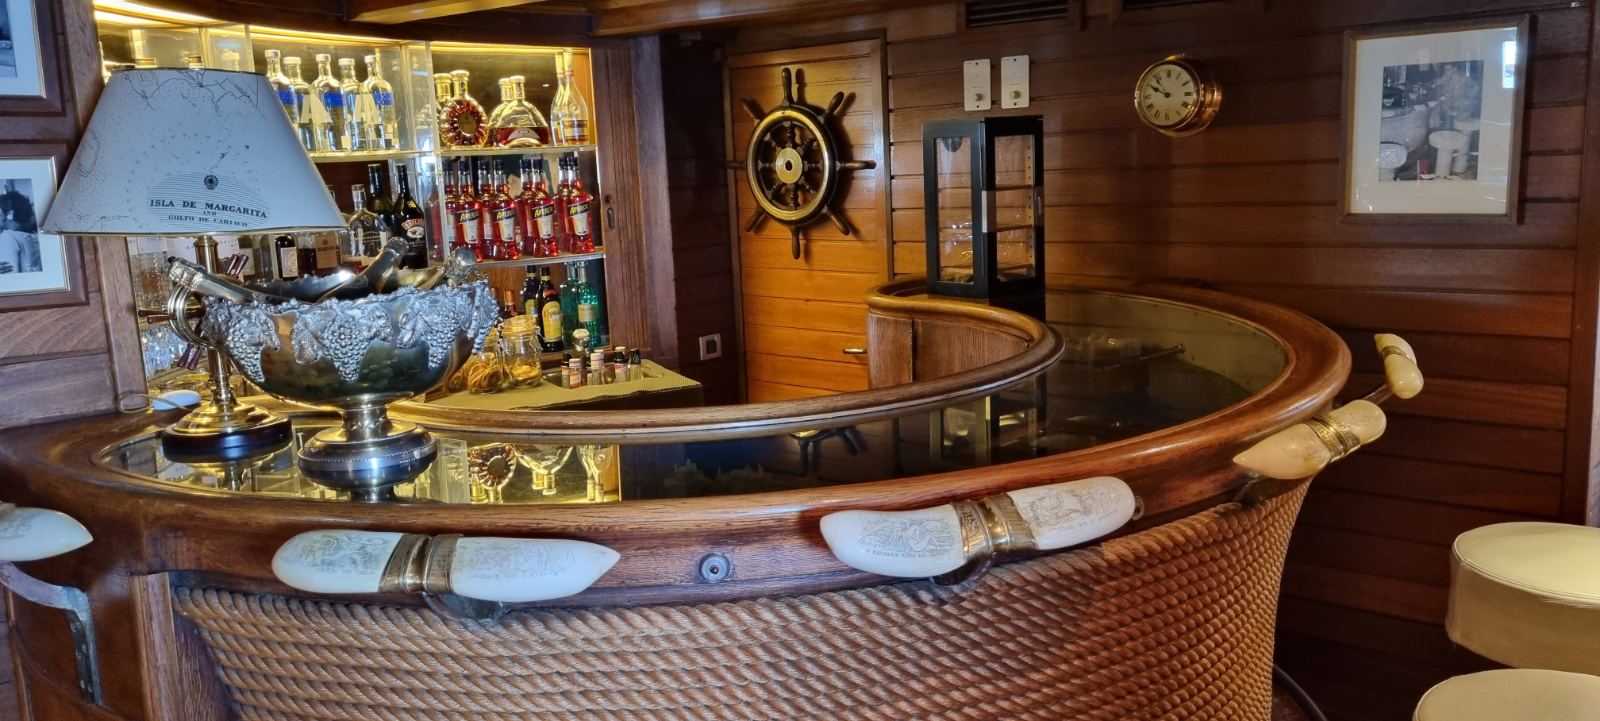 Τα μυστικά της θρυλικής θαλαμηγού του Ωνάση. Το πιάνο της Κάλλας και το Ari’s bar με σκαμπό από γεννητικά όργανα φάλαινας (φωτο)